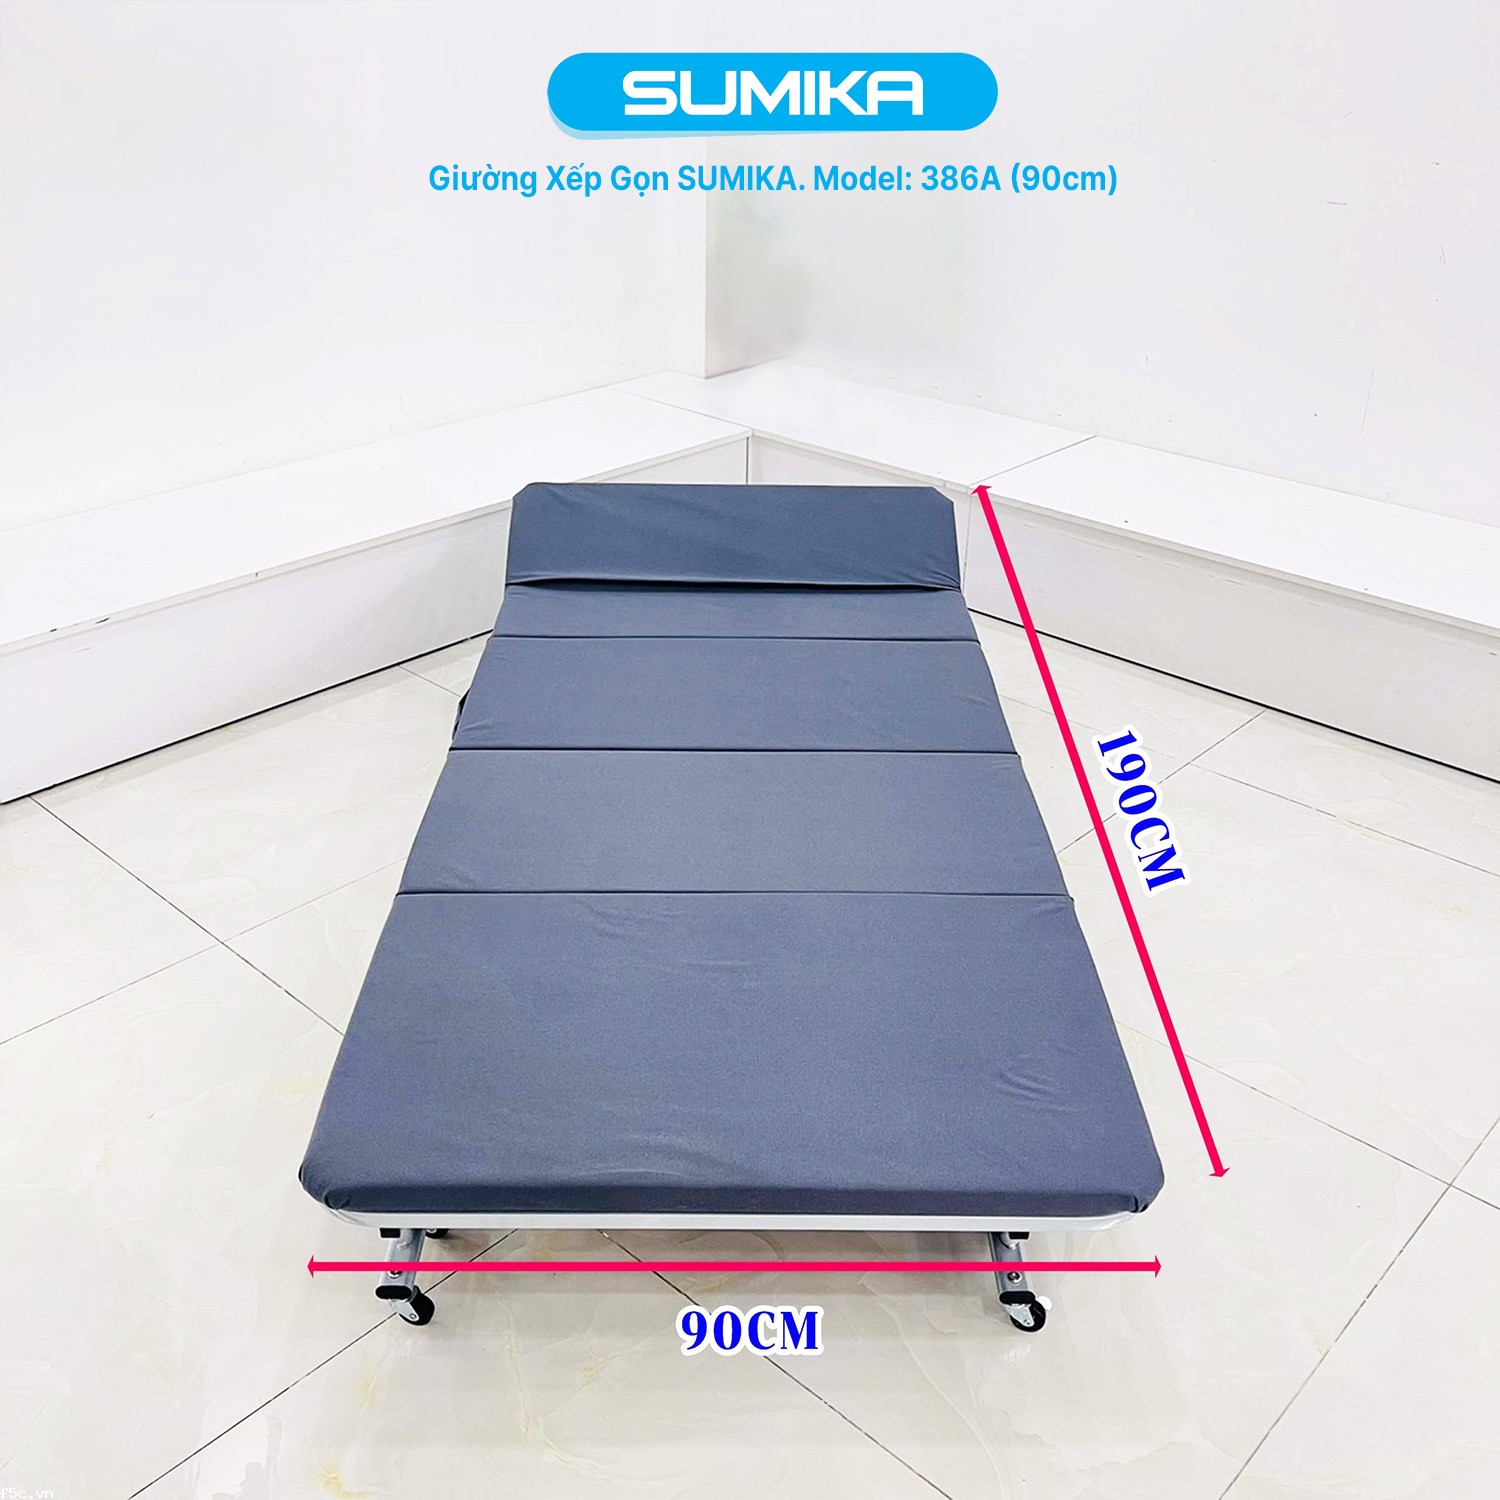 Giường xếp gấp gọn di động tiện lợi SUMIKA 386A, rộng 90cm